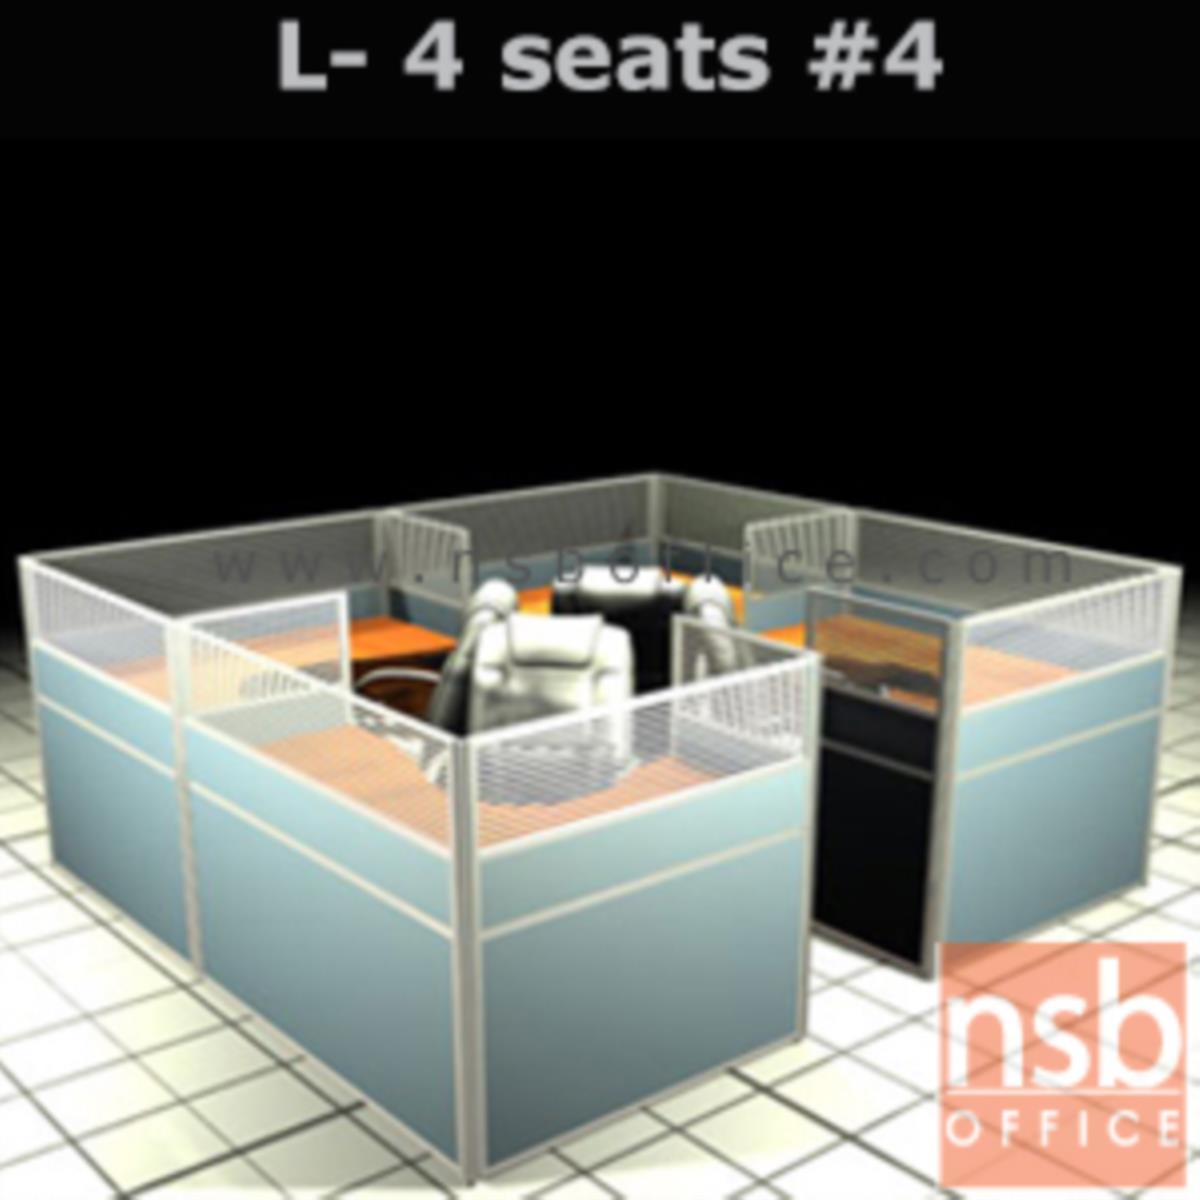 A04A113:ชุดโต๊ะทำงานกลุ่มตัวแอล 4 ที่นั่ง  ขนาดรวม 306W*276D cm. พร้อมพาร์ทิชั่นครึ่งกระจกขัดลาย